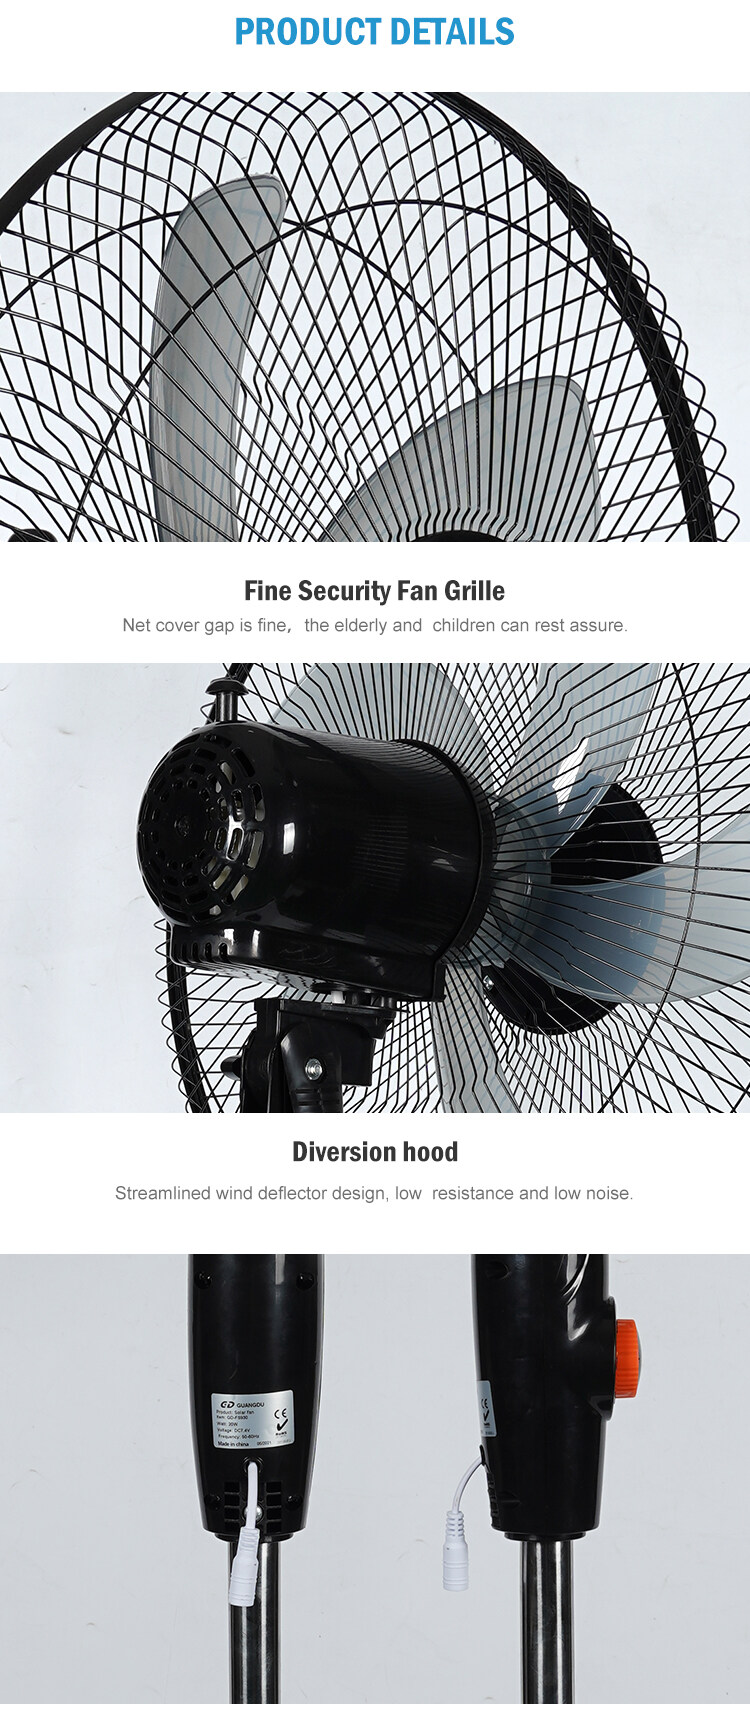 ภาพประกอบของ MJY พัดลมโซล่าเซลล์ พัดลมไฟฟ้าตั้งพื้น Solar Cell Fan พัดลมตั้งพื้น 16 นิ้ว พัดลมตั้งพื้น สีขาว สีดำ Electric Fan Floor Fan Hold